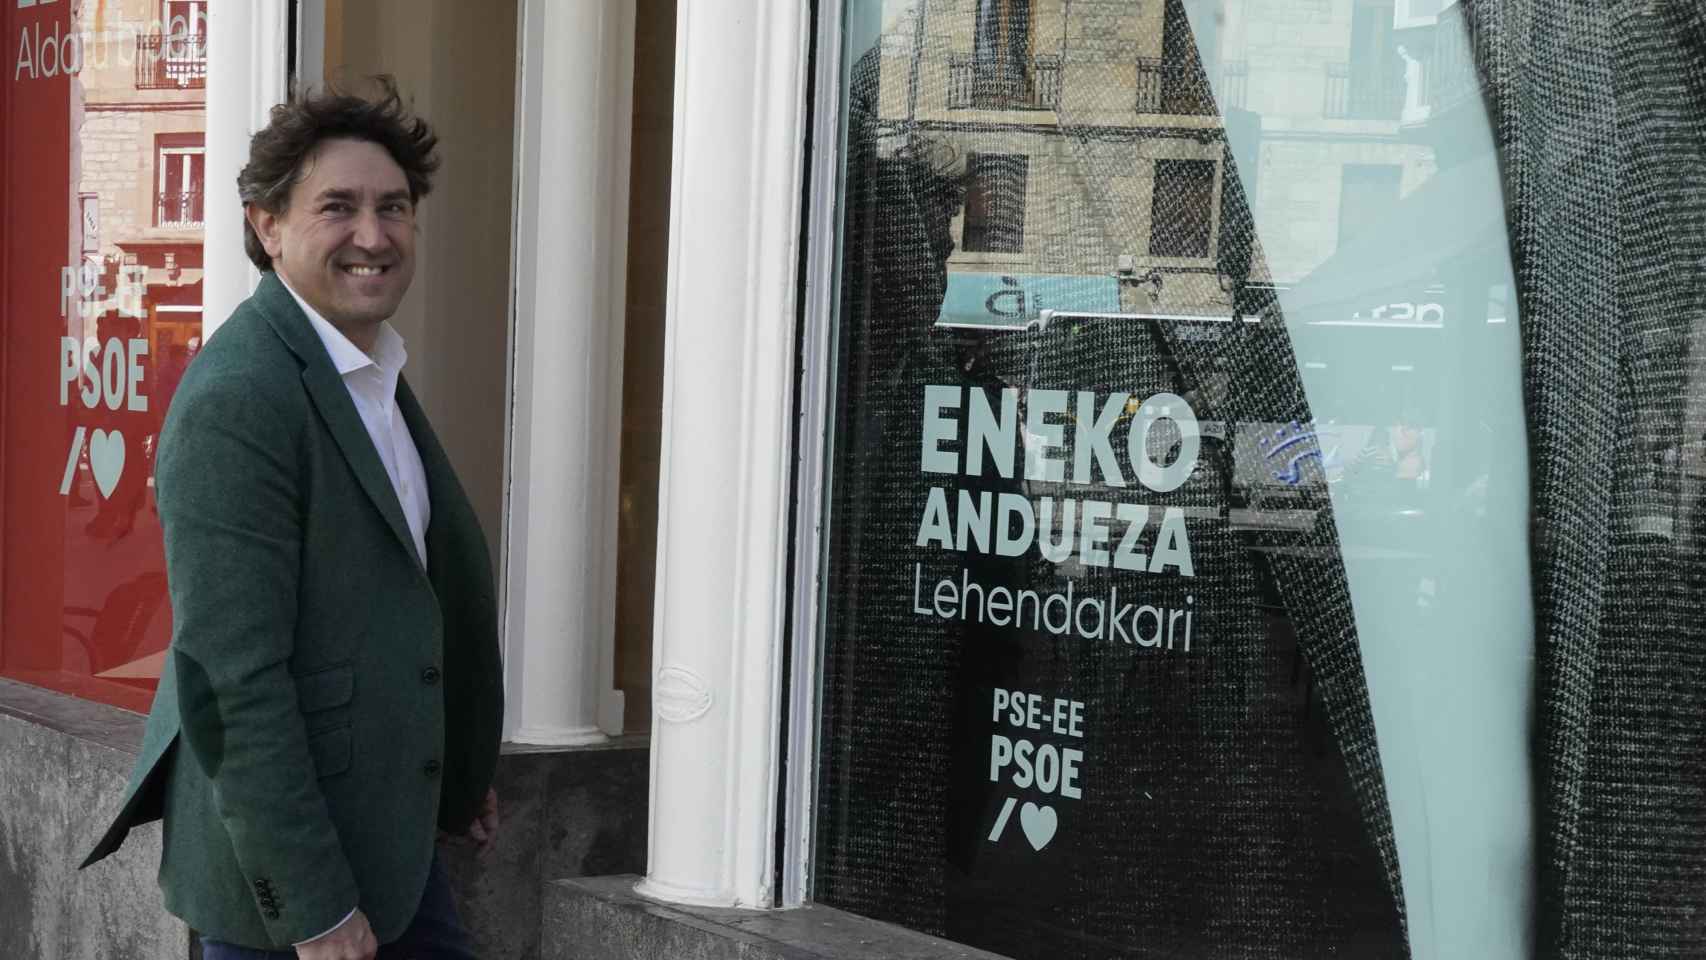 El candidato a lehendakari del PSE-EE, Eneko Andueza, junto a la sede a pie de calle de su partido en Vitoria / Paulino Oribe